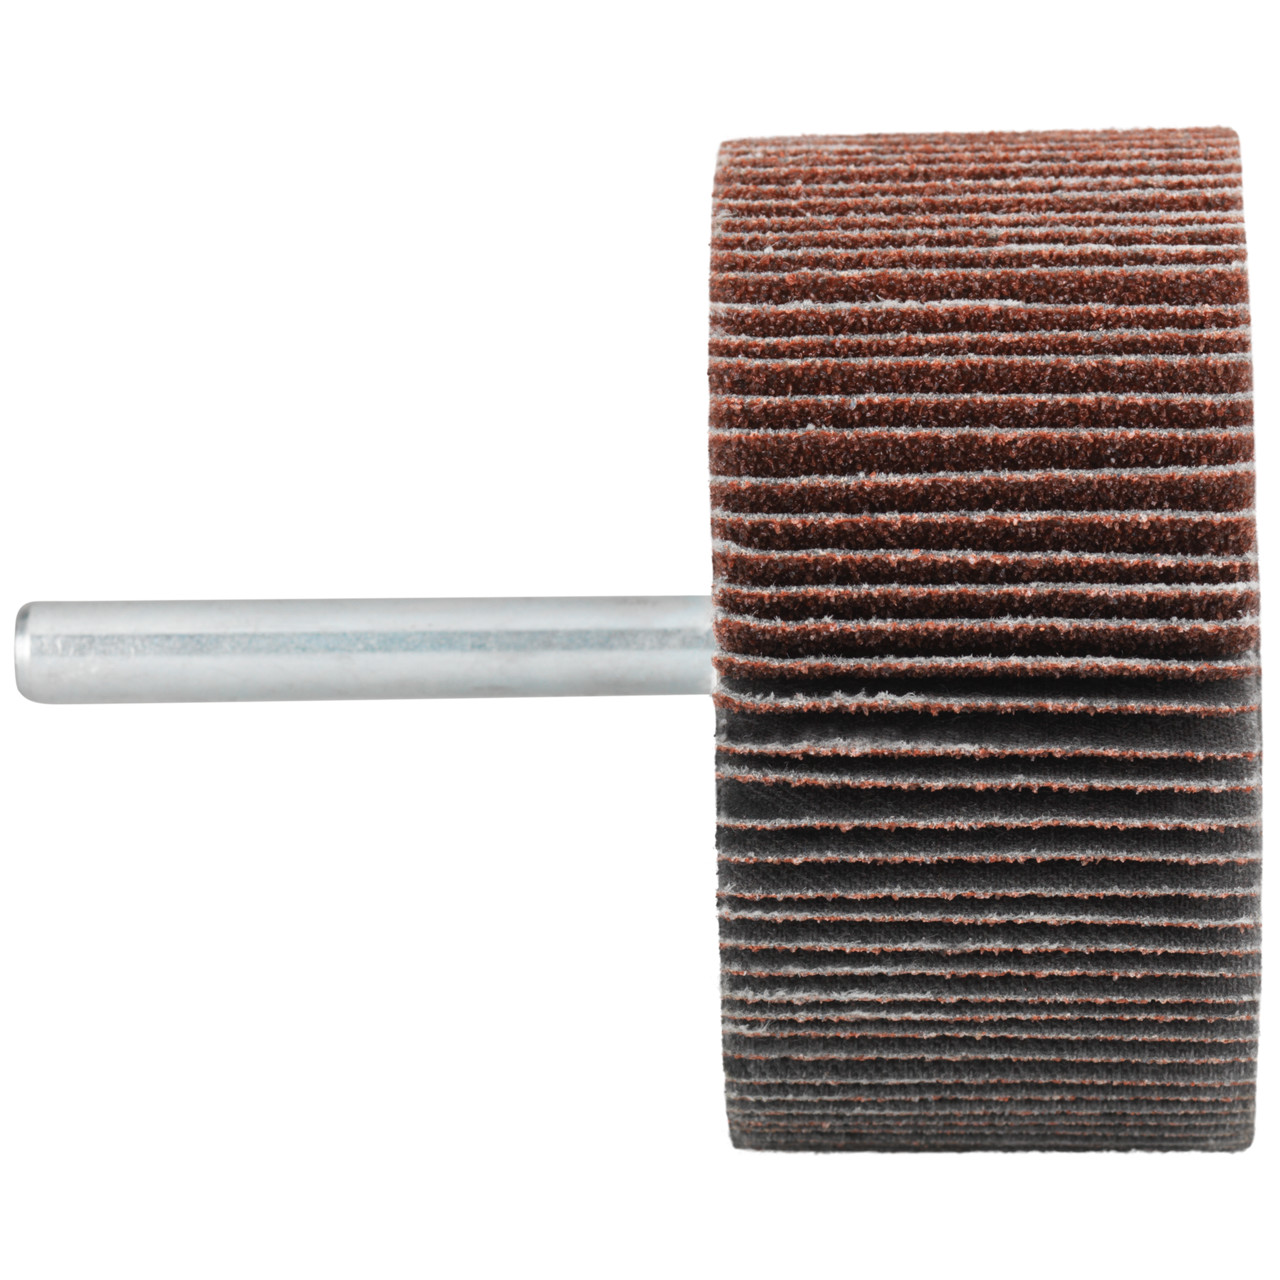 Tyrolit A-P01 C X Pennen DxD 40x15 Voor staal, roestvast staal en non-ferrometalen, P60, vorm: 52LA, Art. 816907